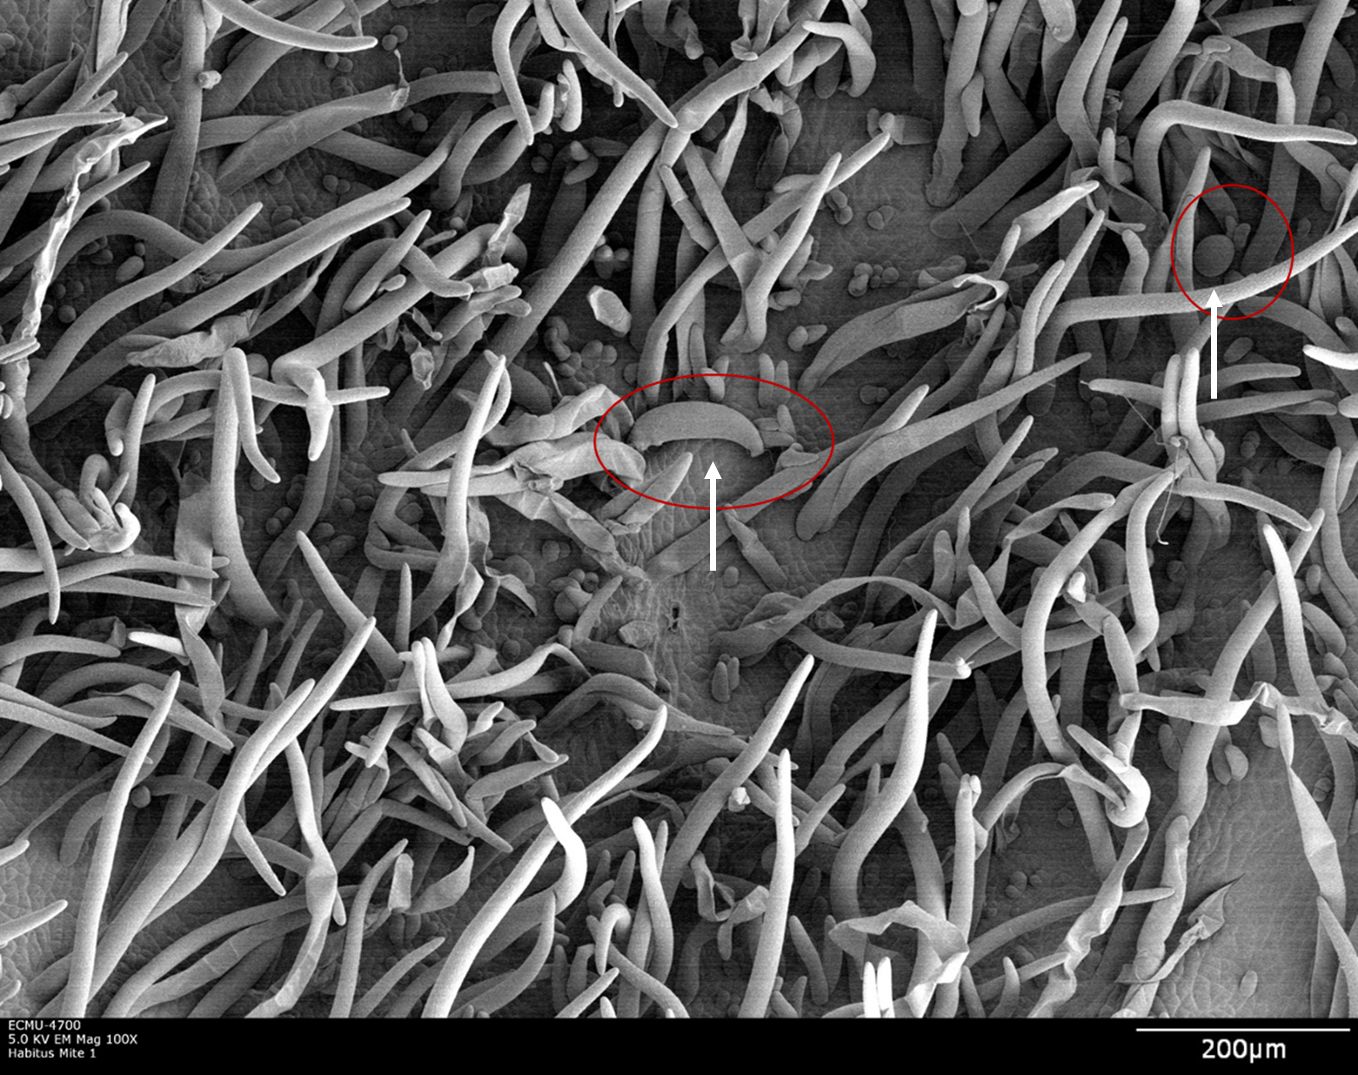 Imagen mostrando los pelos hipertróficos de la hoja en una erinosis. Foto tomada con microscopía electrónica de escaneo (LT-SEM) usando baja temperatura. En la base de los pelos, los círculos rojos indicados con flechas señalan una hembra adulta (izquierda) y un huevo (derecha) de Aceria litchi.